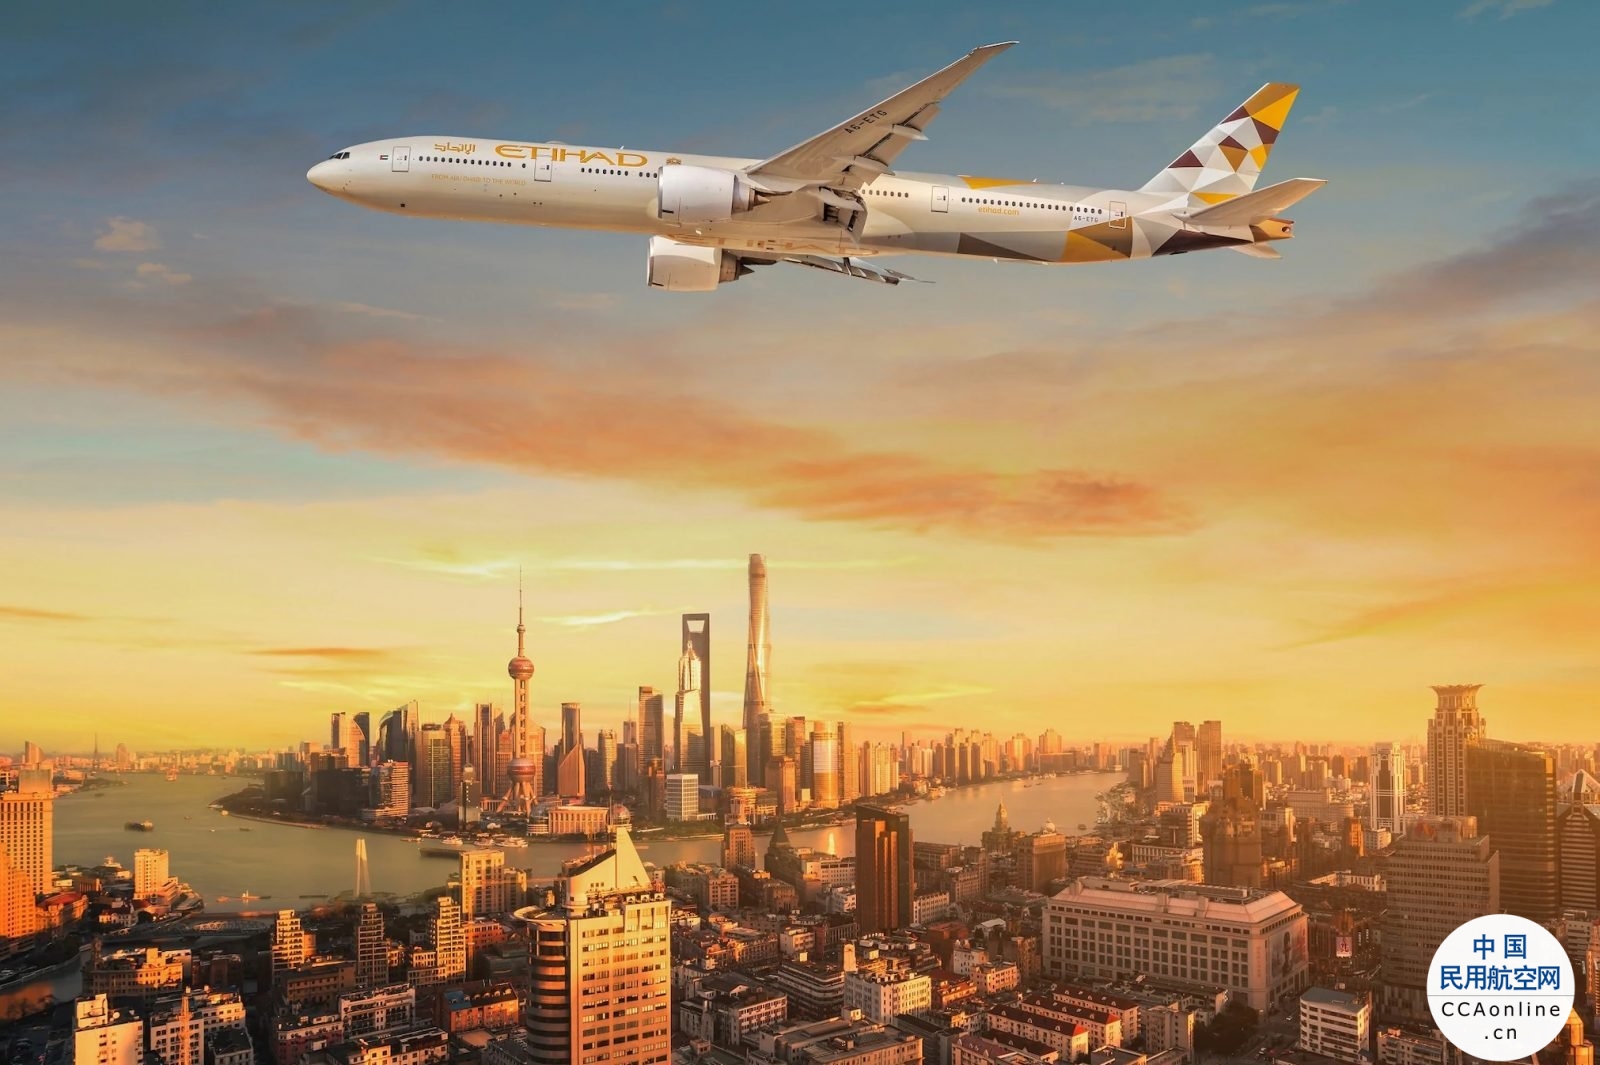 阿提哈德航空宣布全新阿提哈德常旅客计划 为会员提供更多定制福利